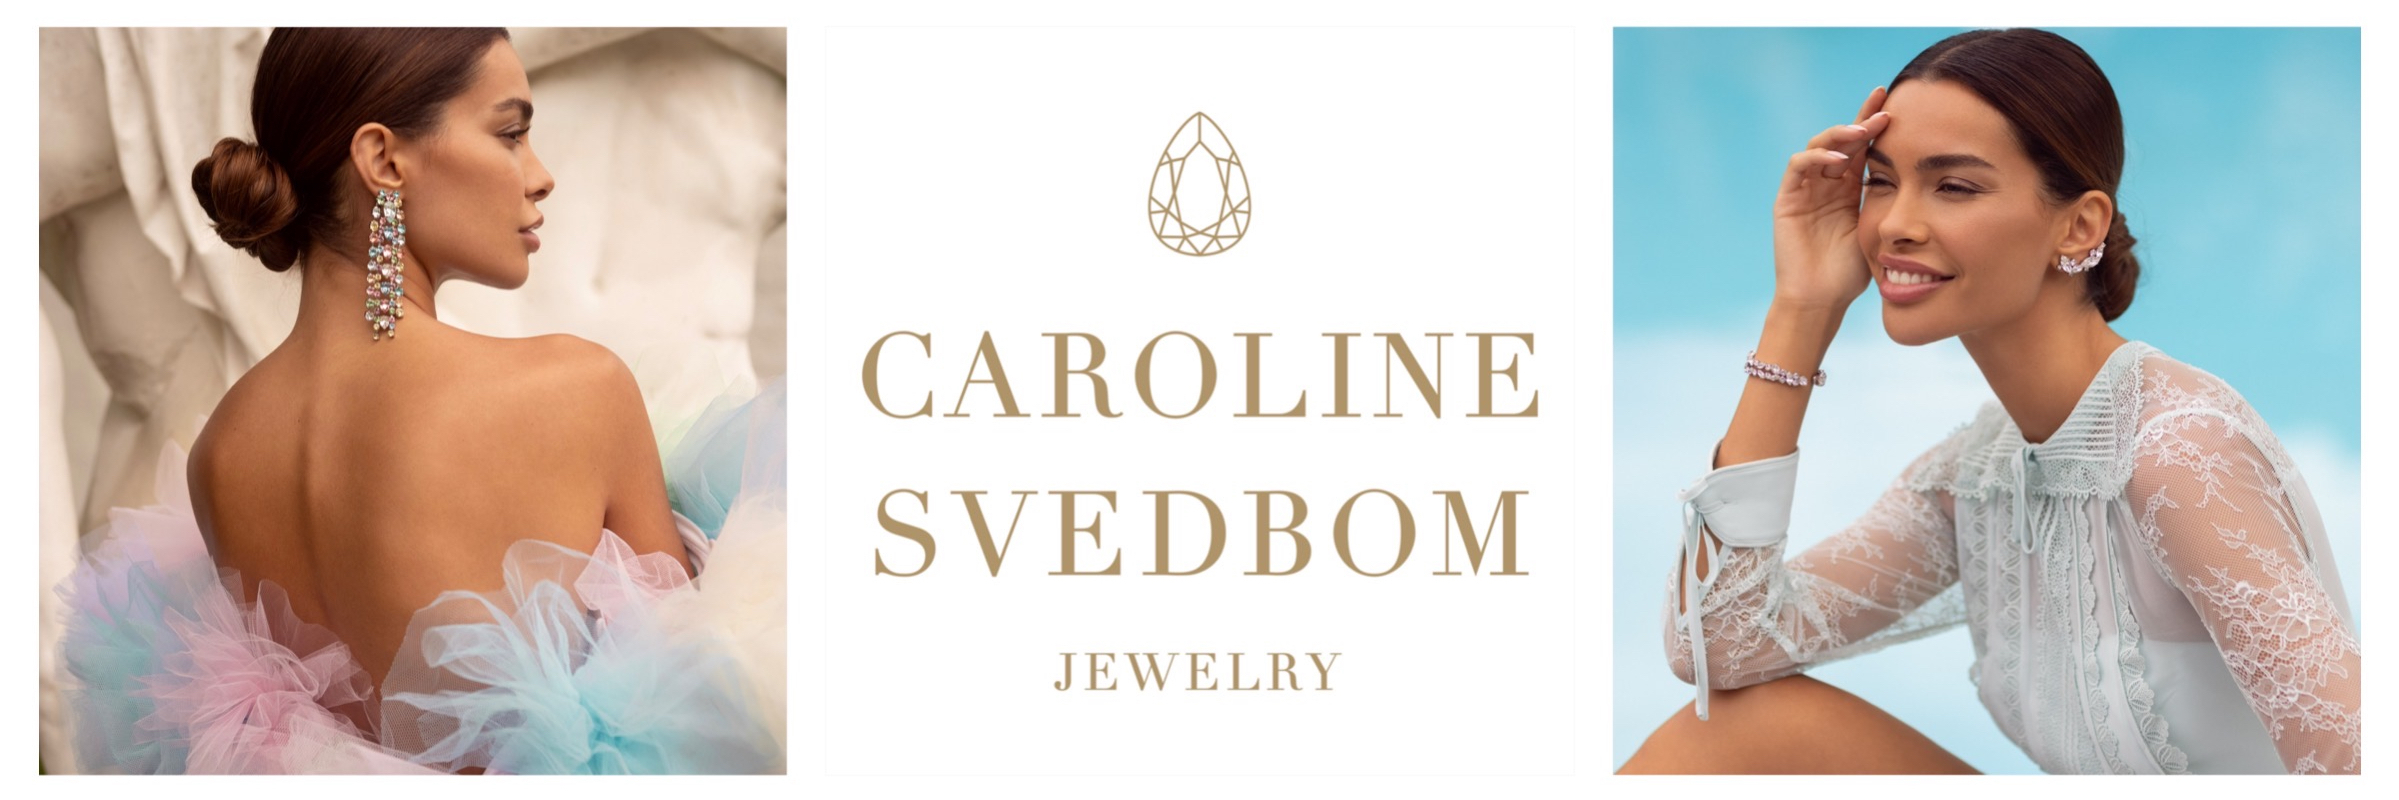 Caroline_svedbom_jewelry